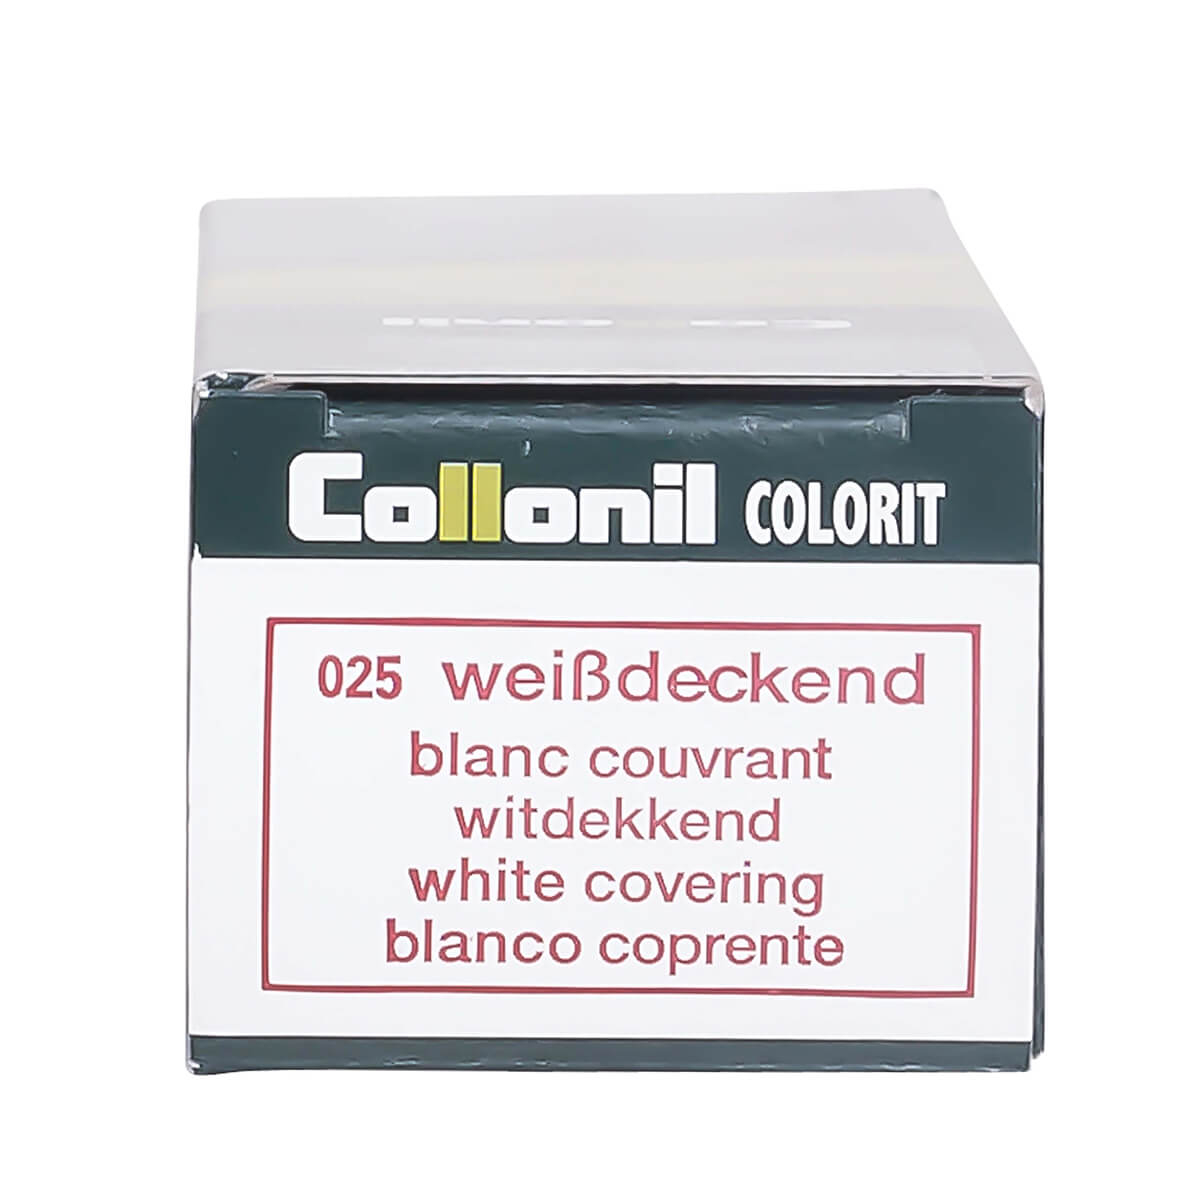 Collonil Creme COLORIT white